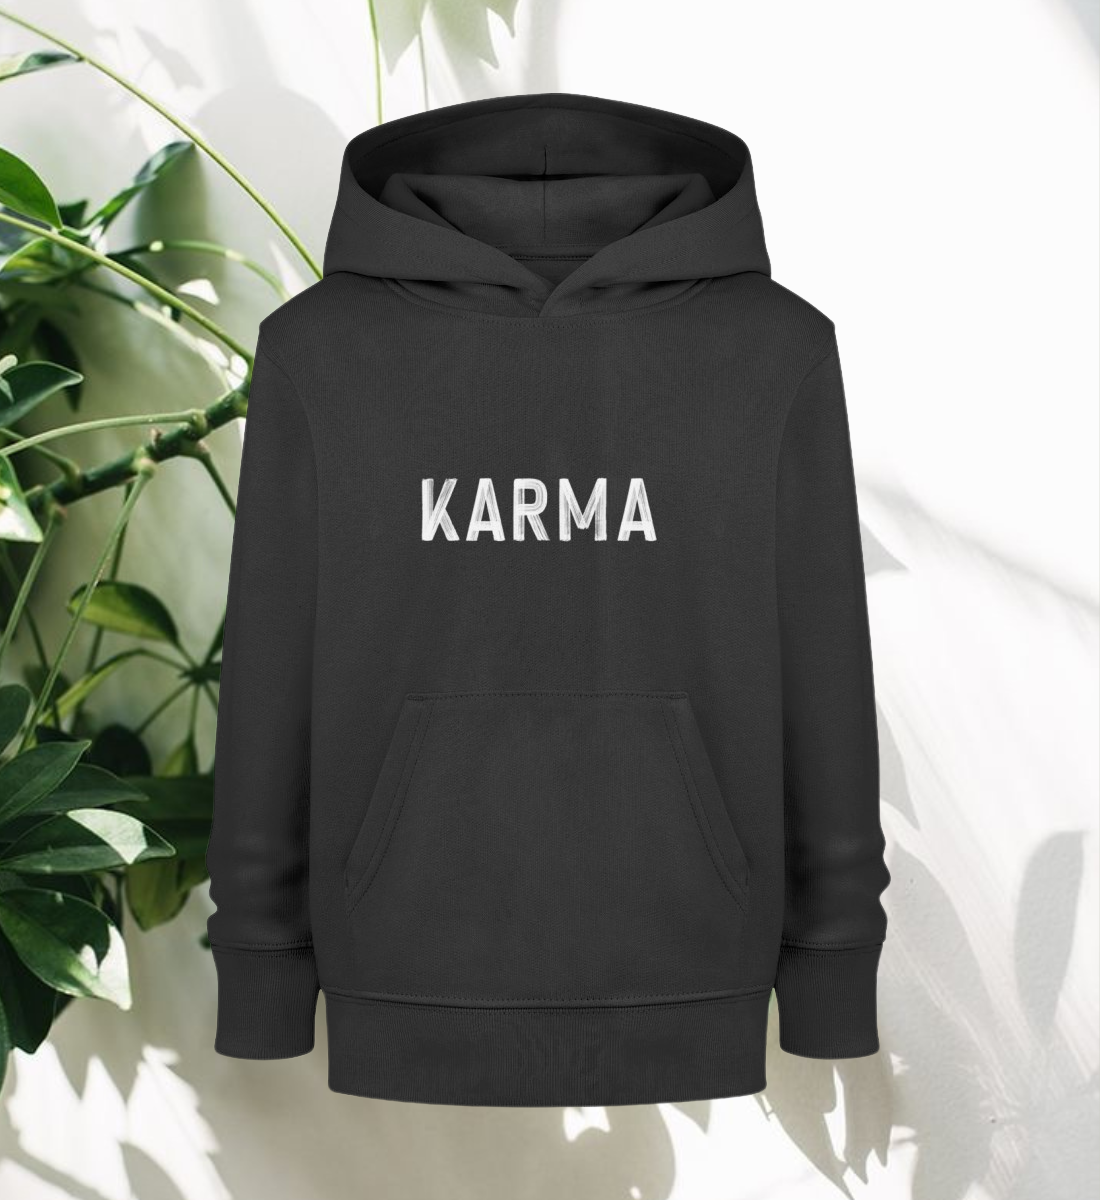 karma l bio hoodie kinder schwarz l kleidung für kinder l ausgefallene yoga kleidung l umweltfreundlich leben dank grüner mode